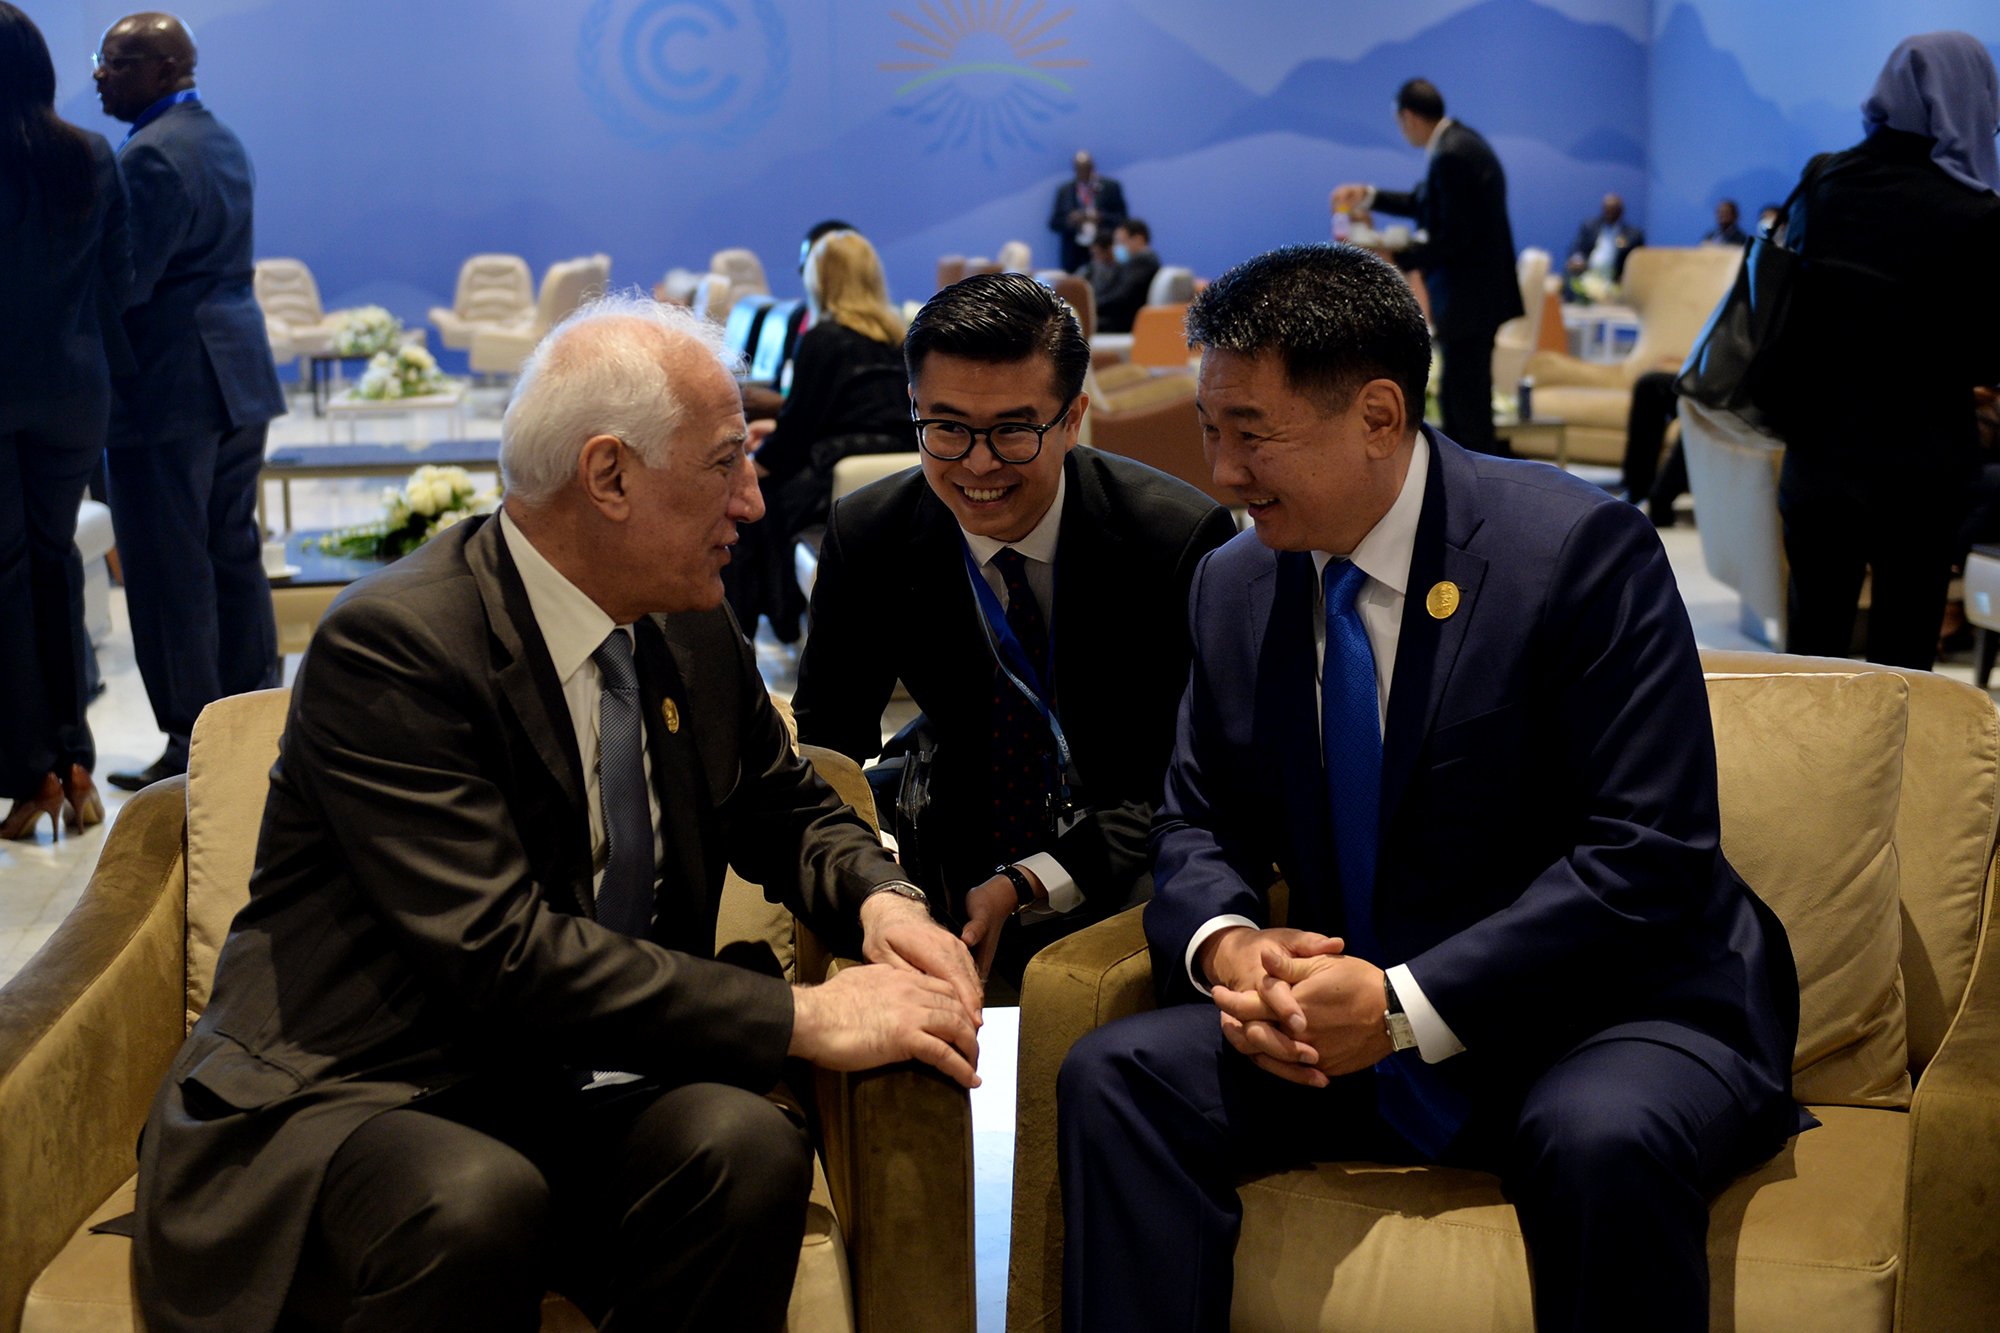 ՀՀ նախագահը առանձնազրույցներ է ունեցել մի շարք երկրների ղեկավարների հետ՝ ՄԱԿ-ի Կլիմայի փոփոխության մասին կոնվենցիայի համաժողովի ընթացքում